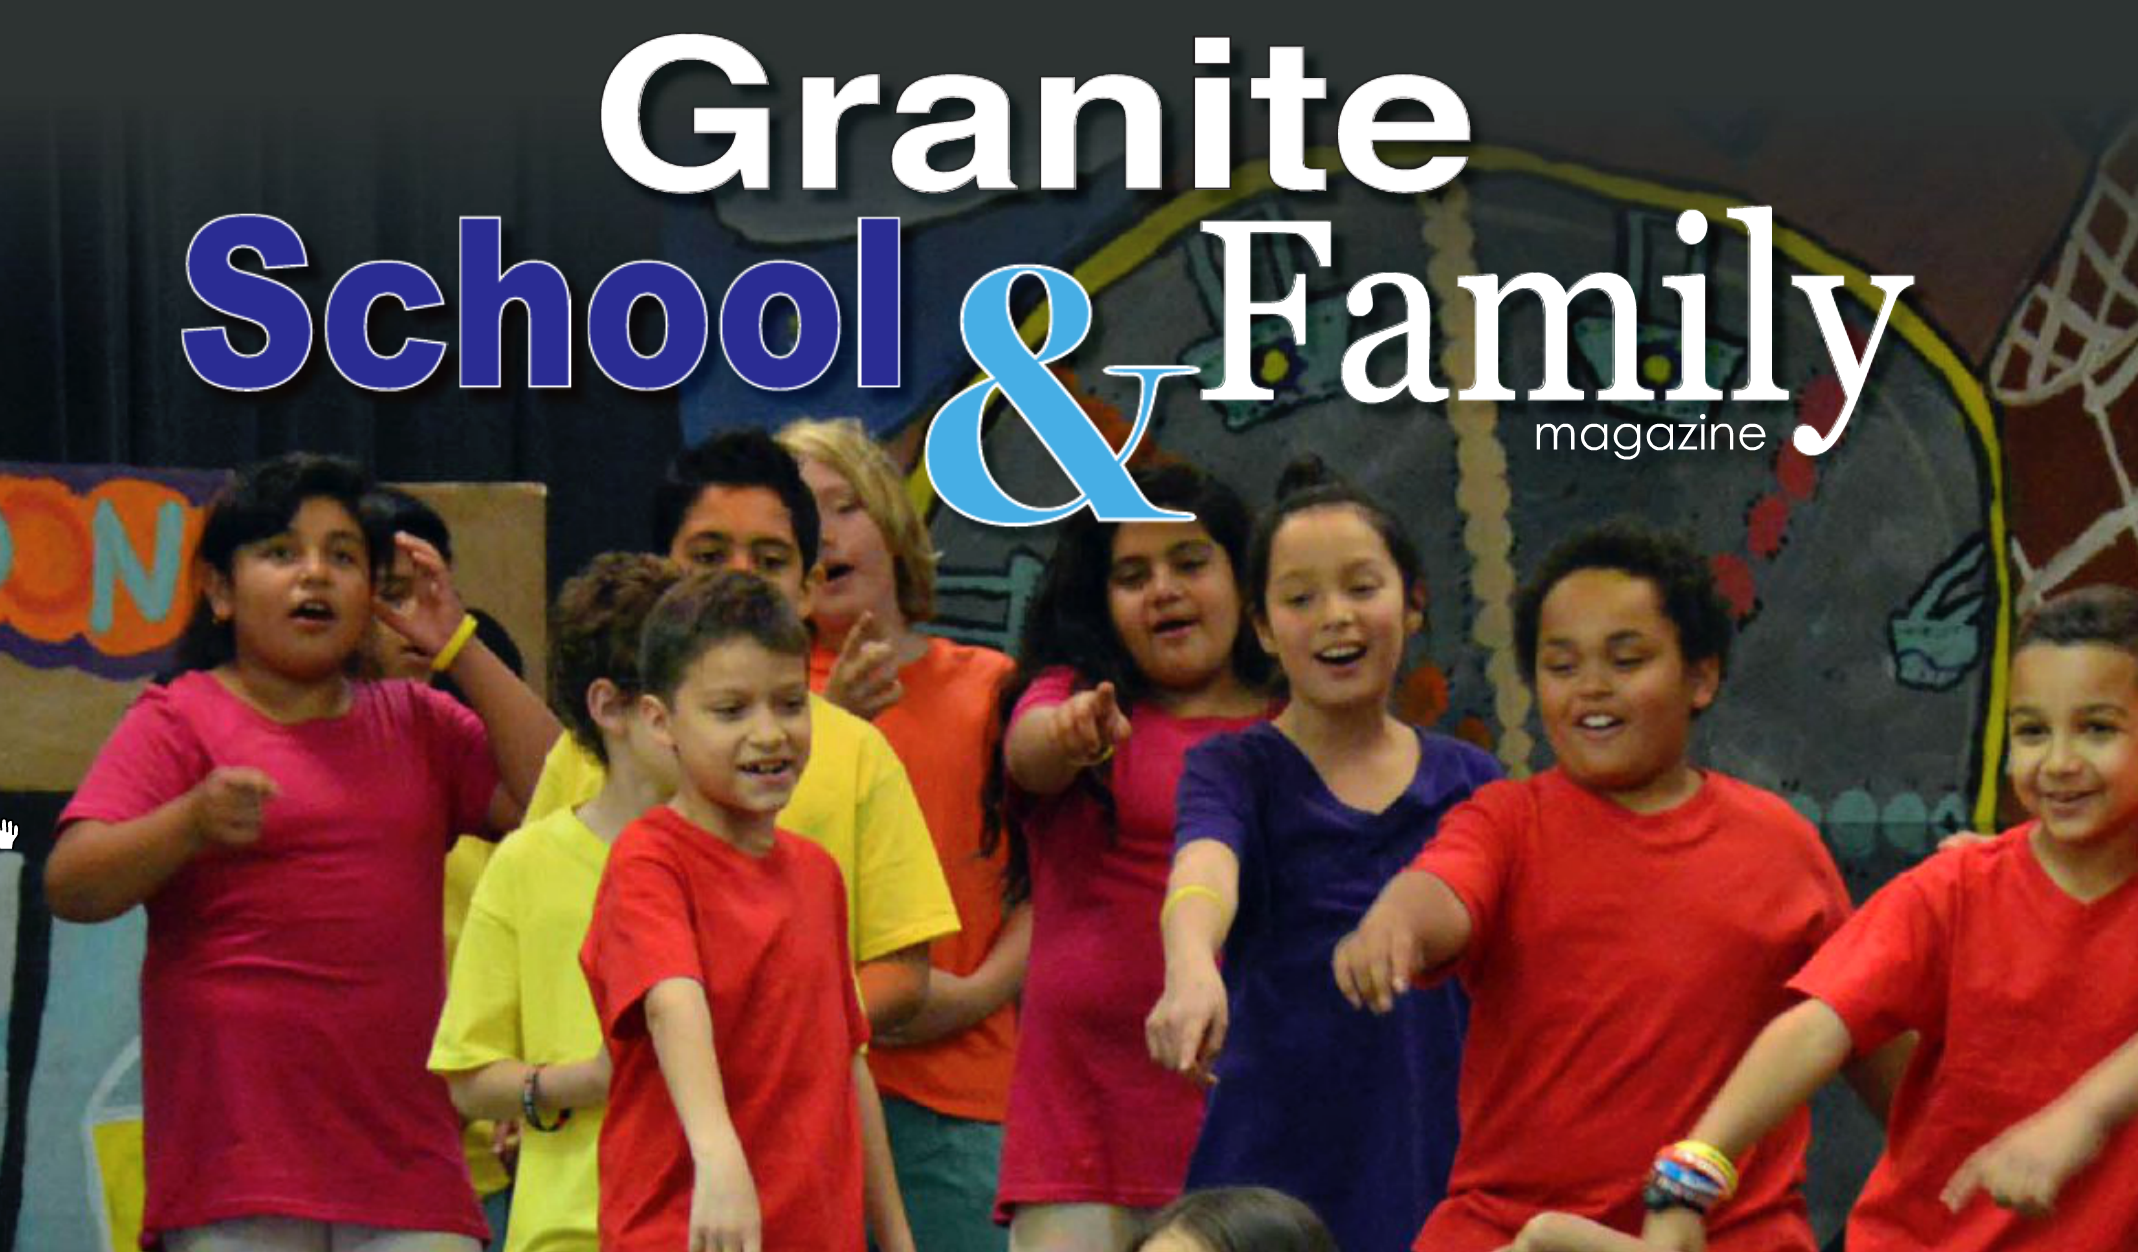 School & Family Magazine